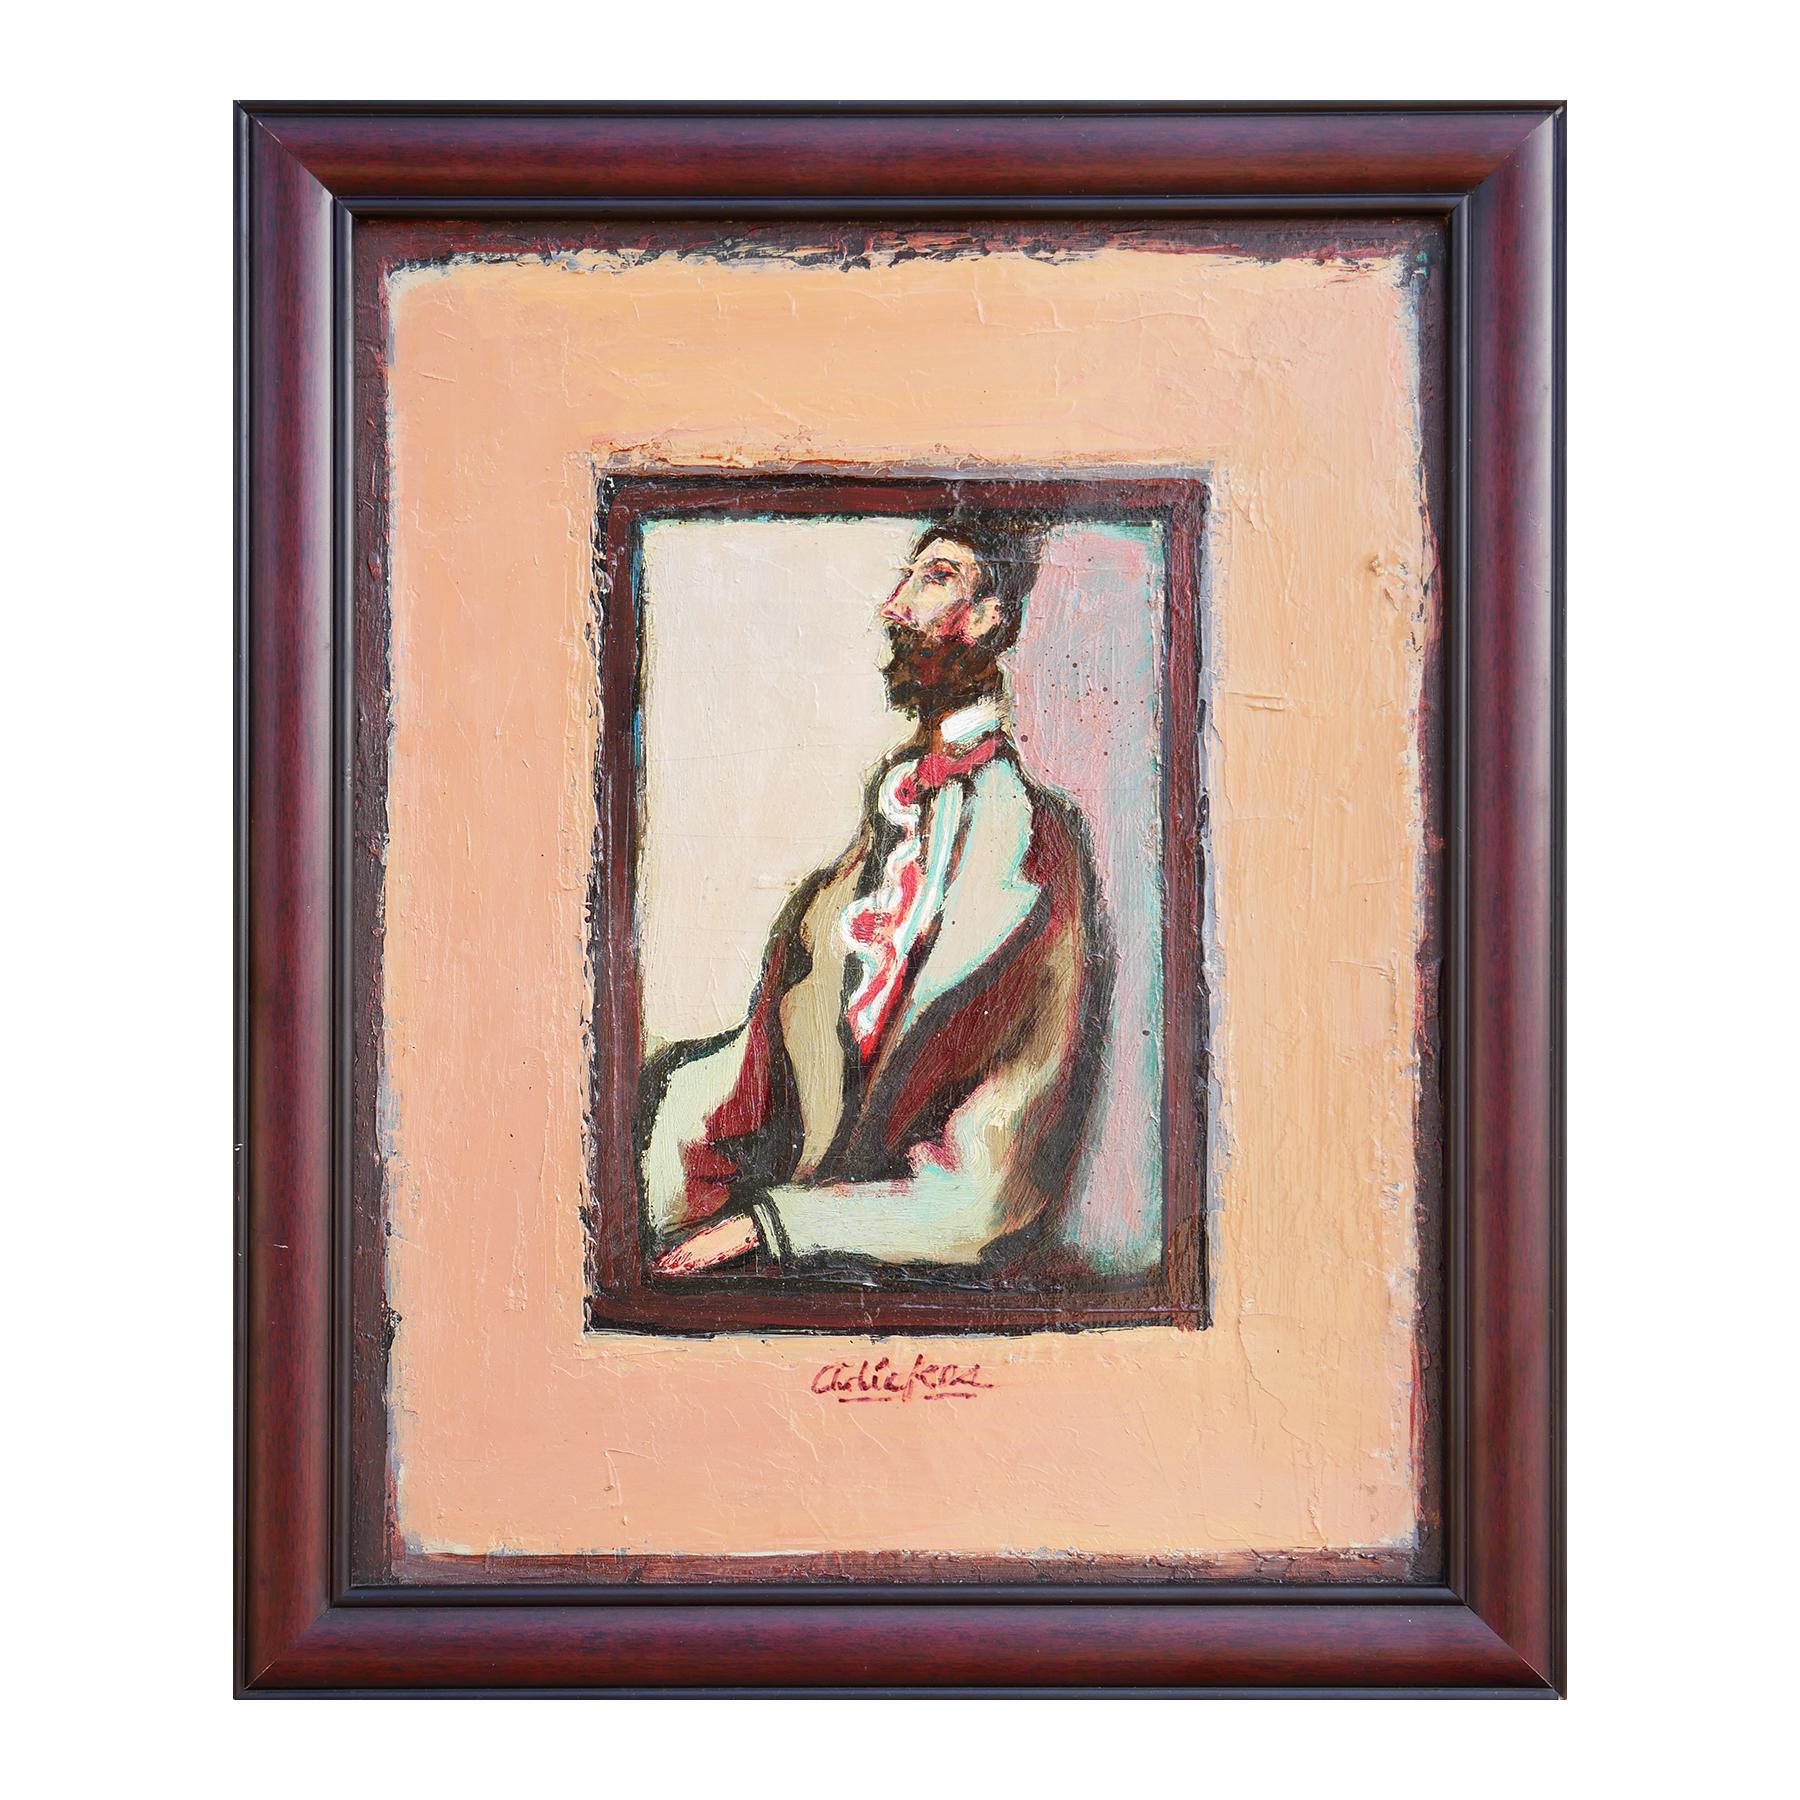 Modernes abstraktes, figuratives Porträtgemälde eines sitzenden Mannes, „The Visitor“ – Painting von David Adickes